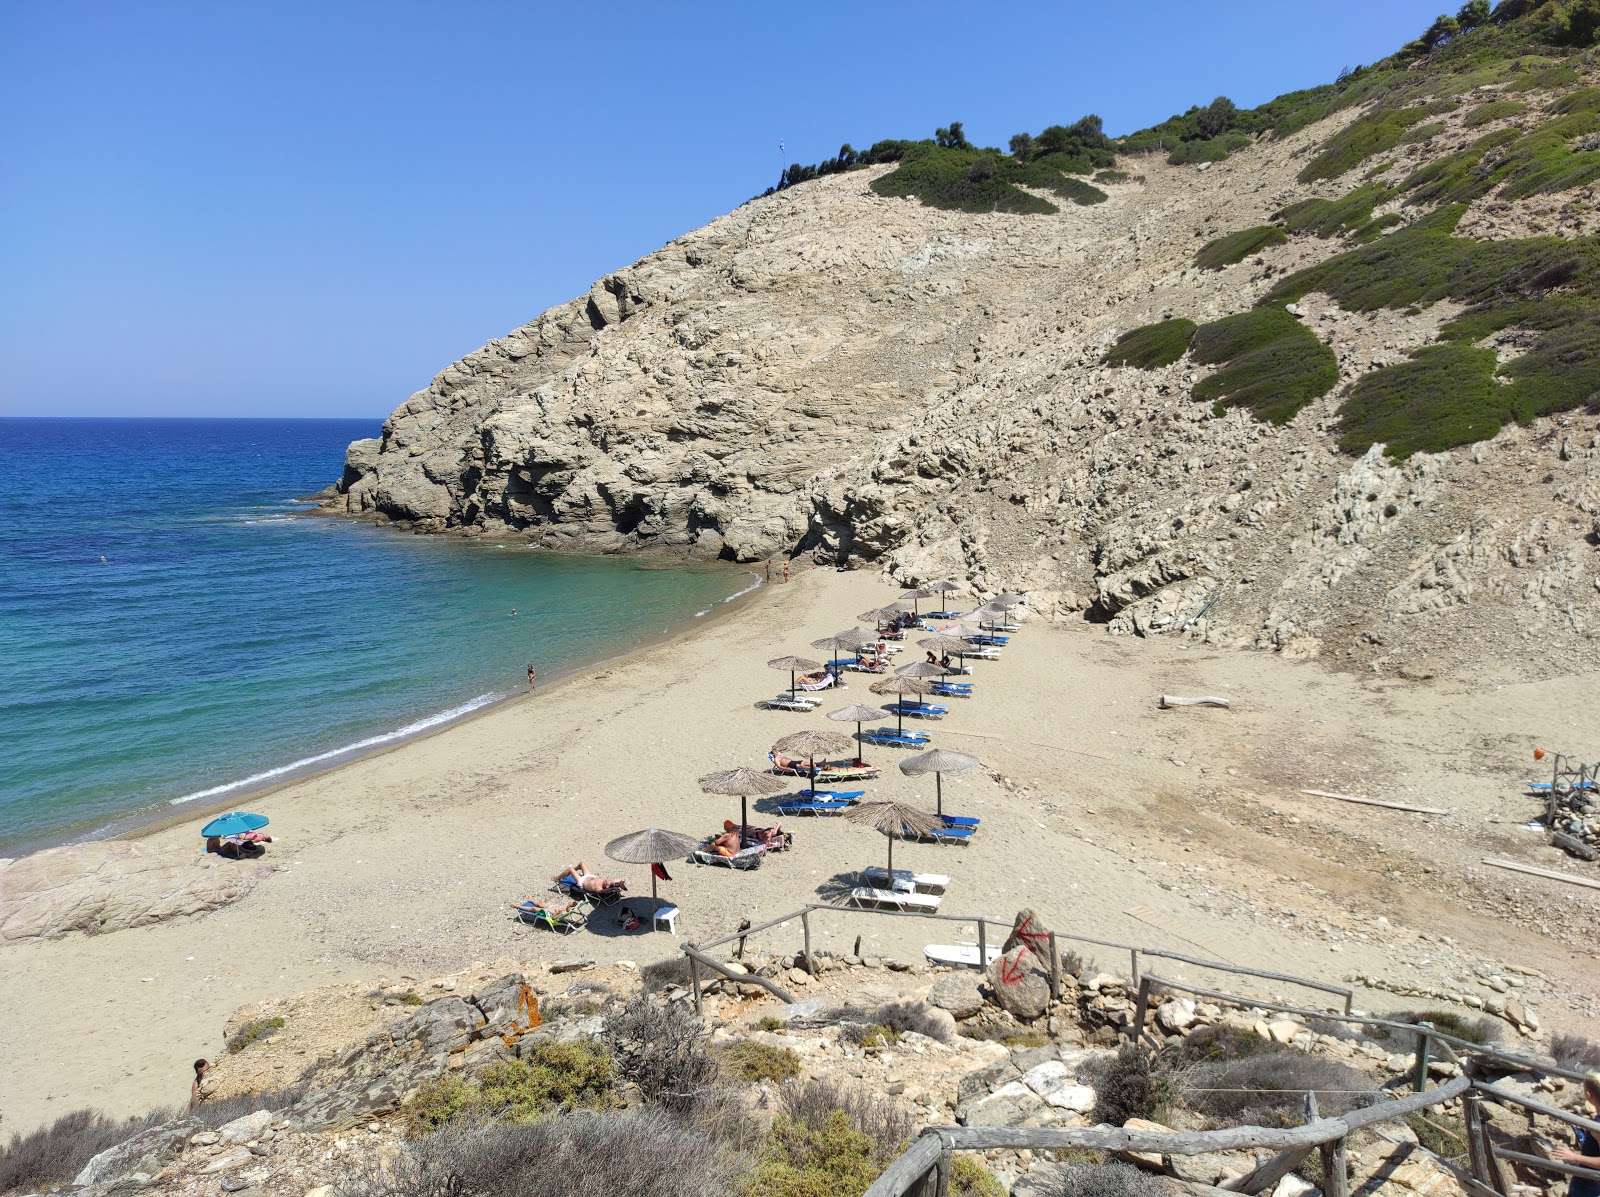 Fotografie cu Mikros Aselinos beach cu o suprafață de nisip gri